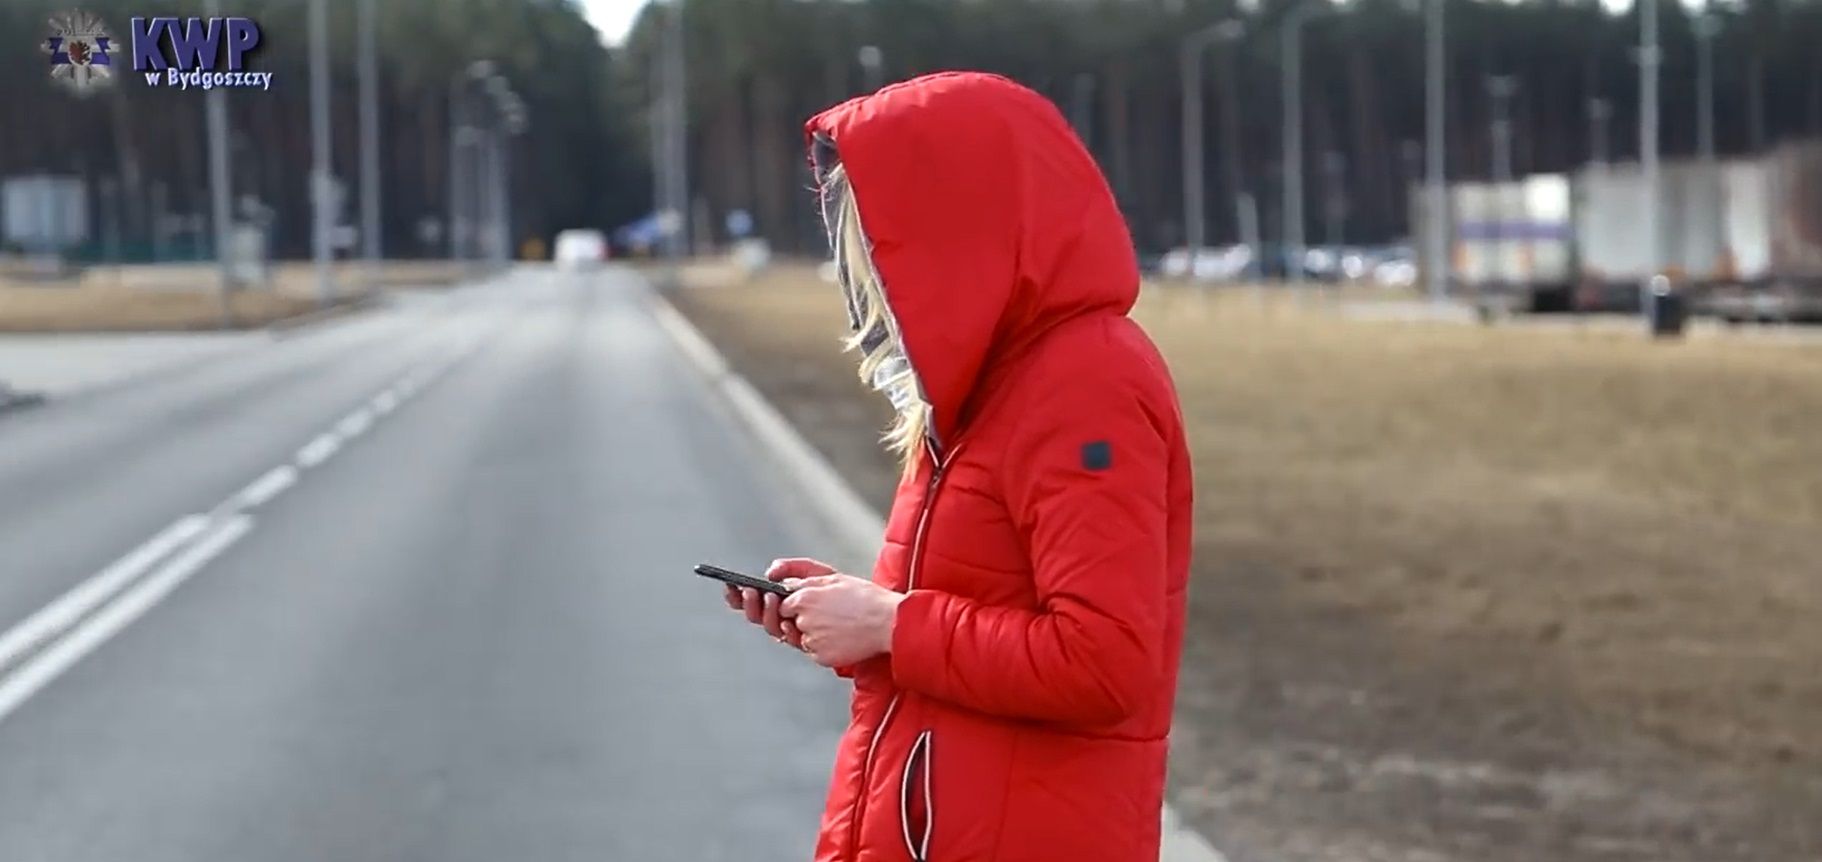 Kobieta z kapturem na głowie wpatrzona w smartfon podczas przechodzenia przez ulicę.